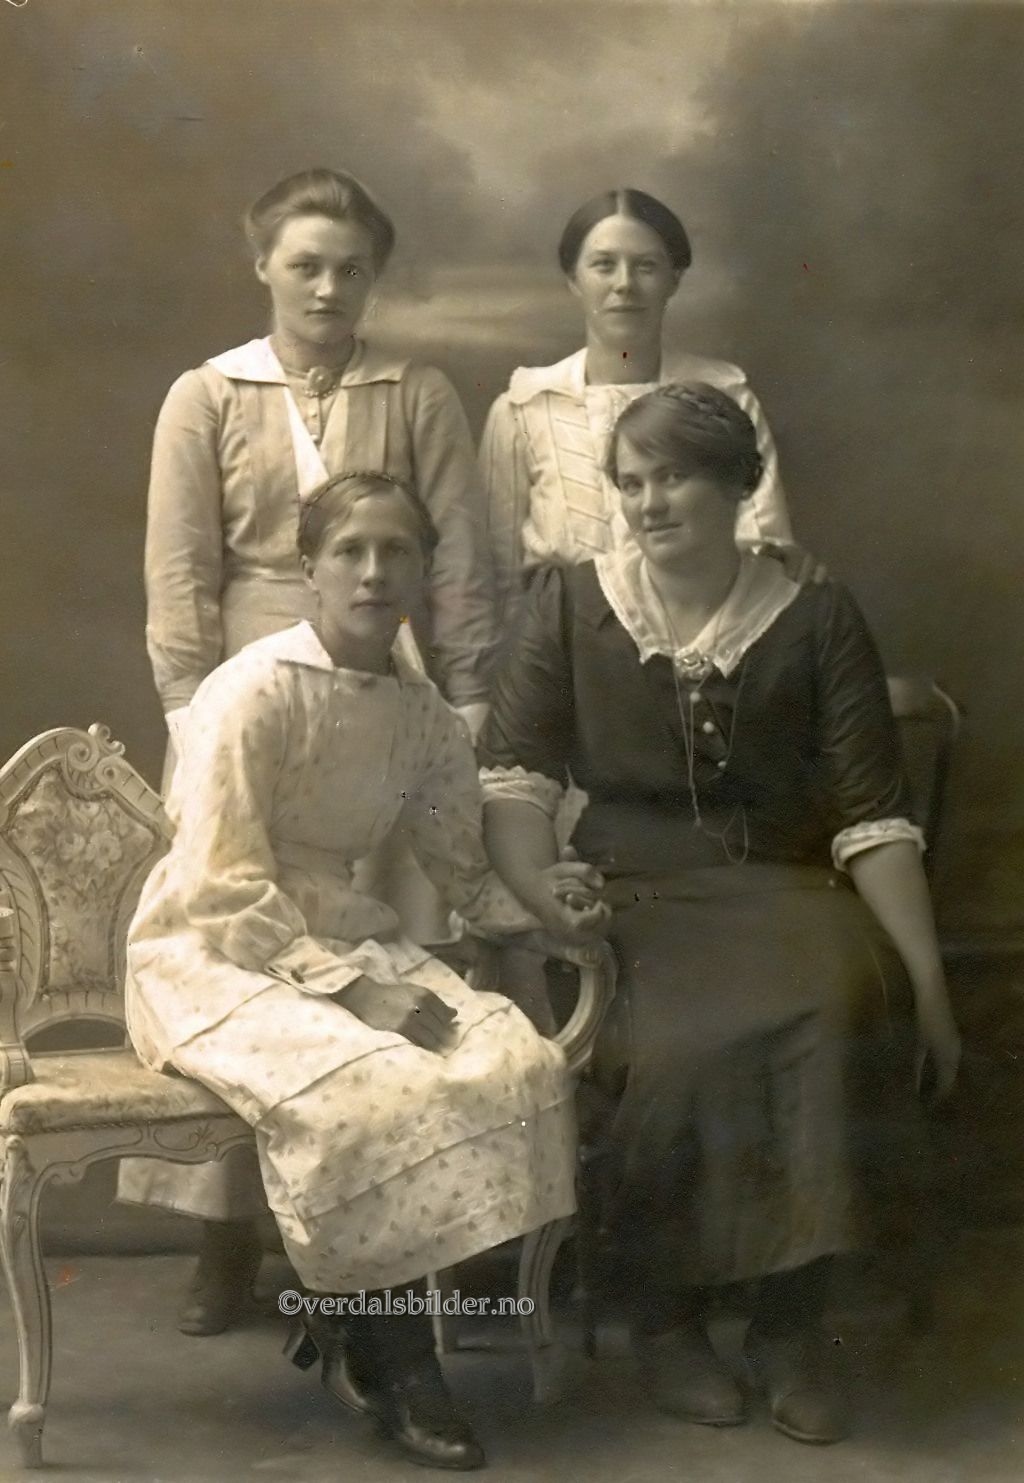  Anna utvandret til Amerika i 1922. Utlånt med navn av Iris Skoknes. Opplysninger hentet fra Helgådalens Bildearkiv.